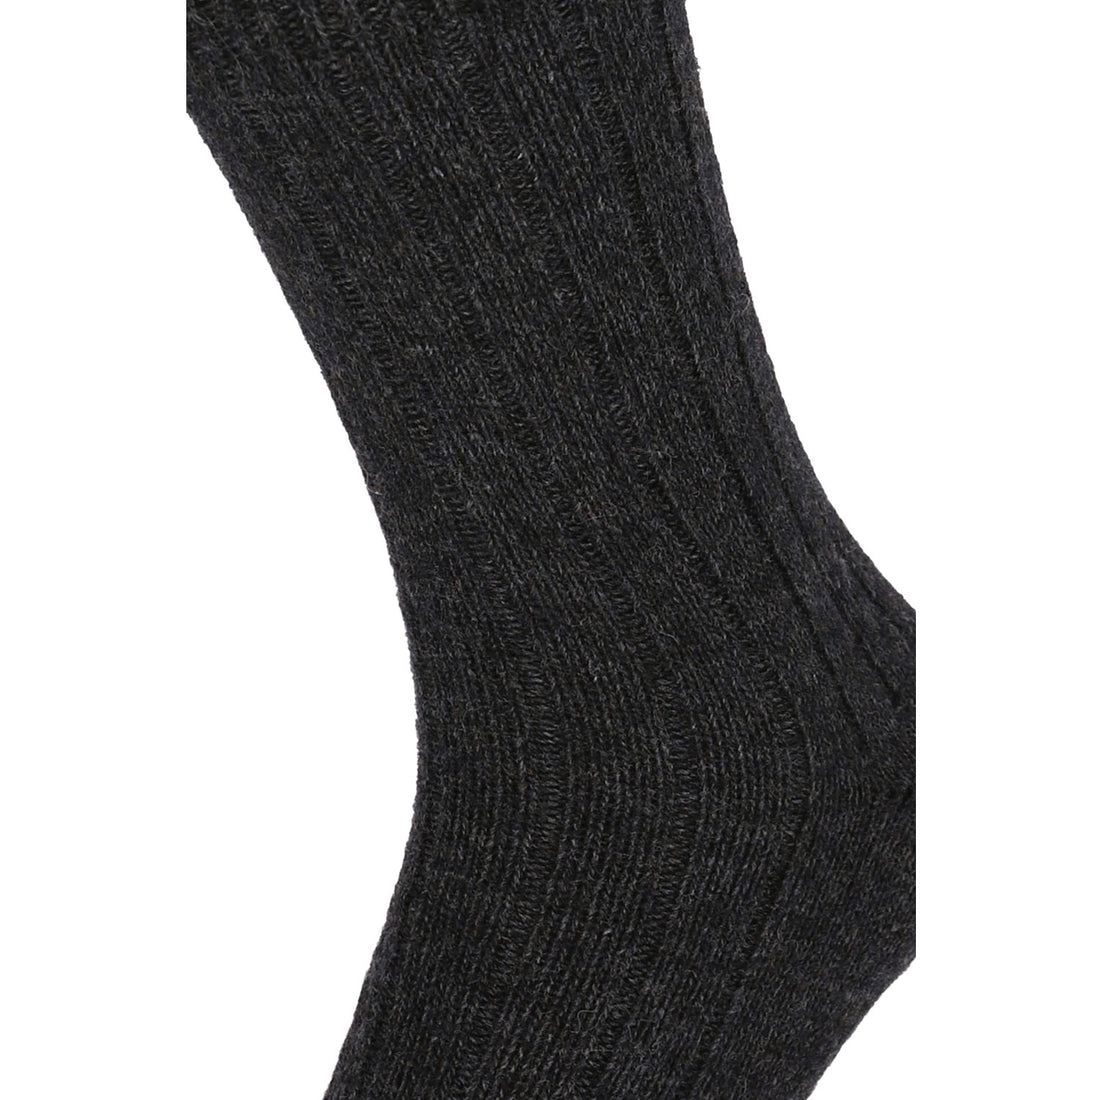 ChiliLifestyle Socken Winter Alpaka Wolle Damen Herren Warm 4 Paar